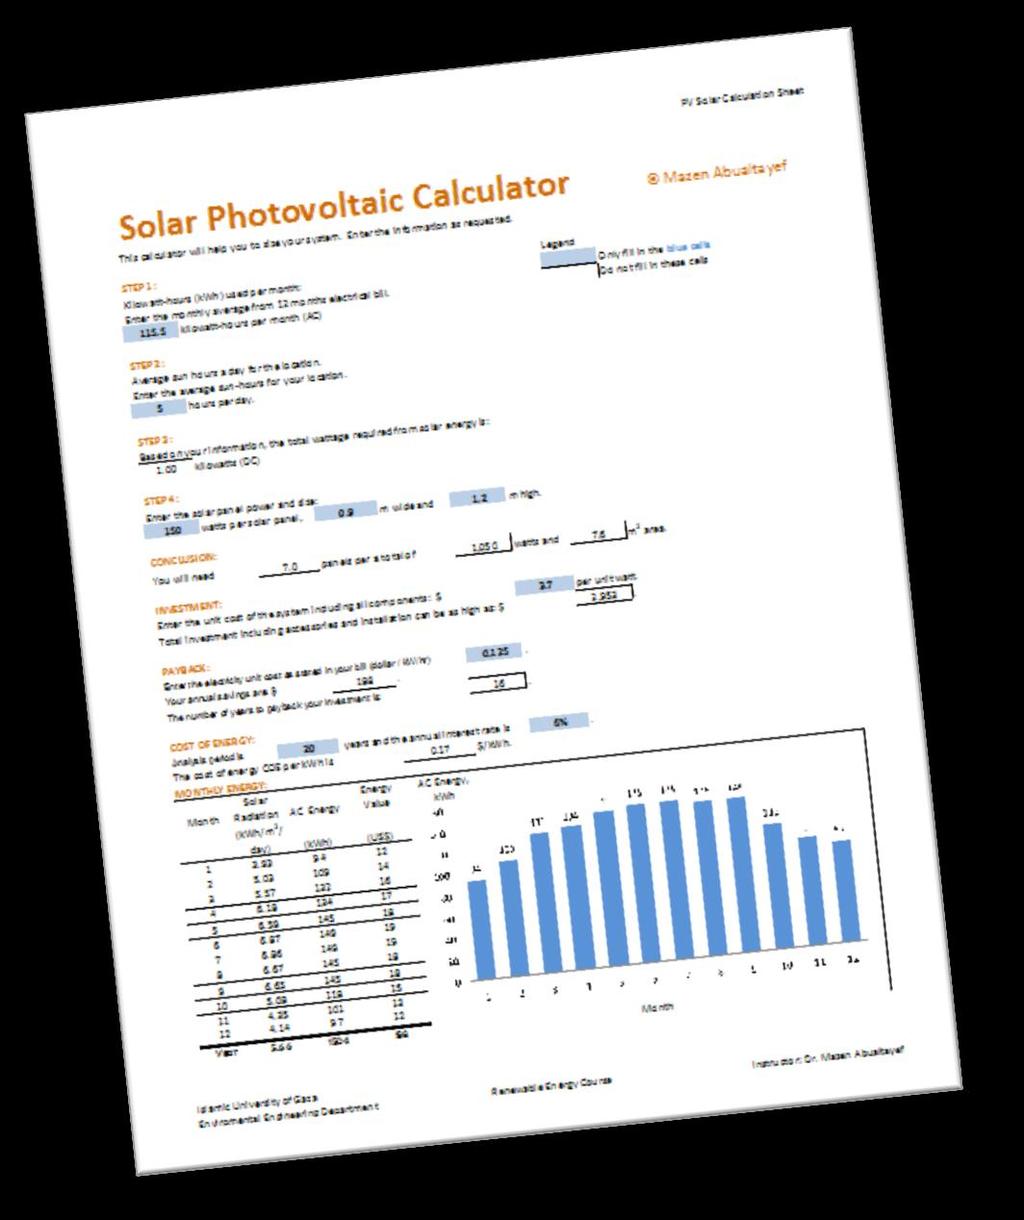 PV Calculator A solar photovoltaic